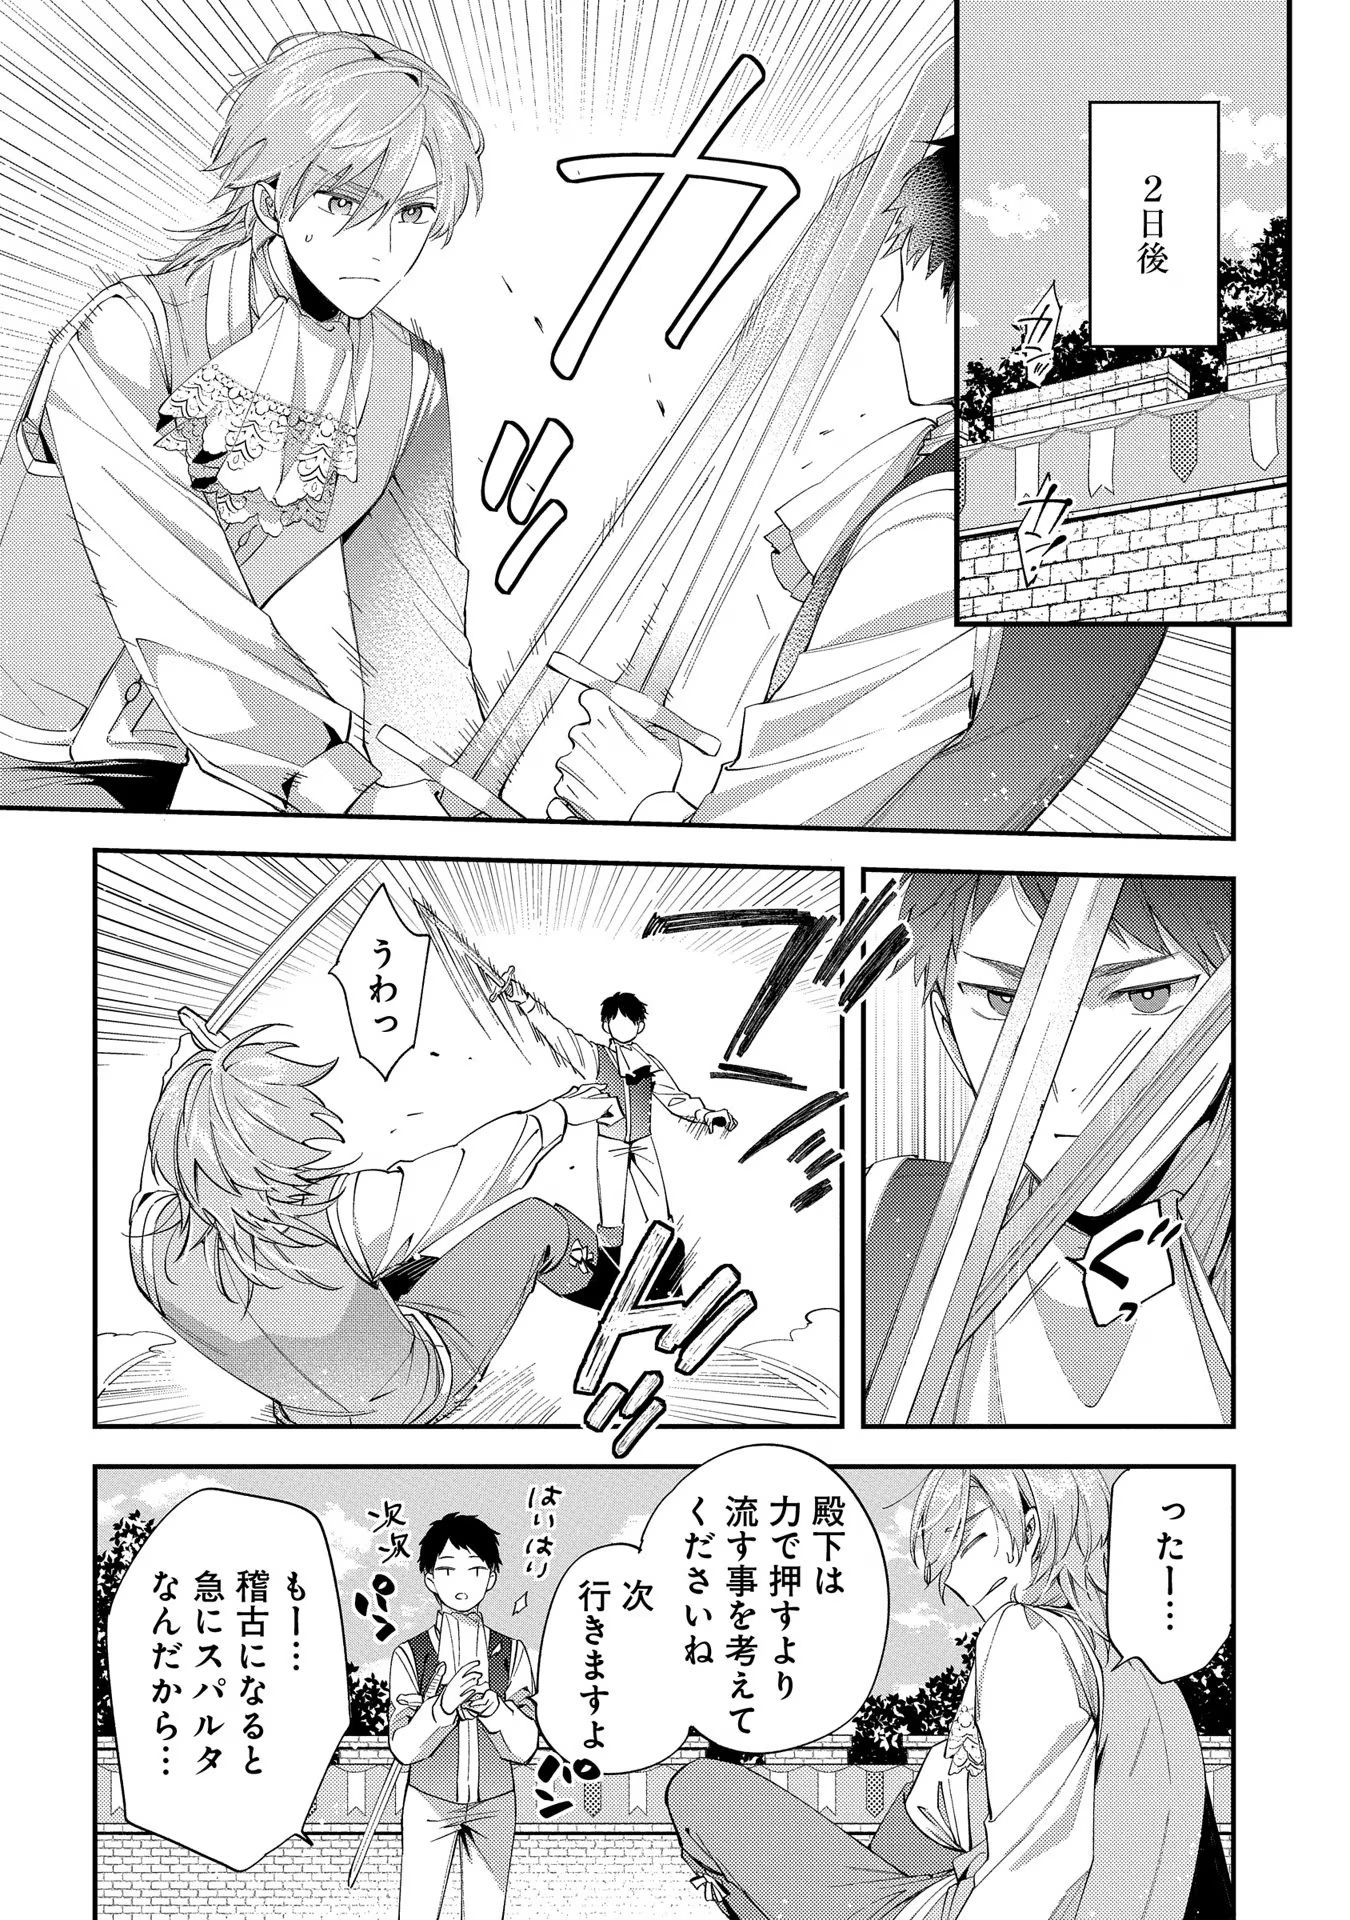 Outaishi ni Konyaku Hakisareta no de, Mou Baka no Furi wa Yameyou to Omoimasu - Chapter 13 - Page 6